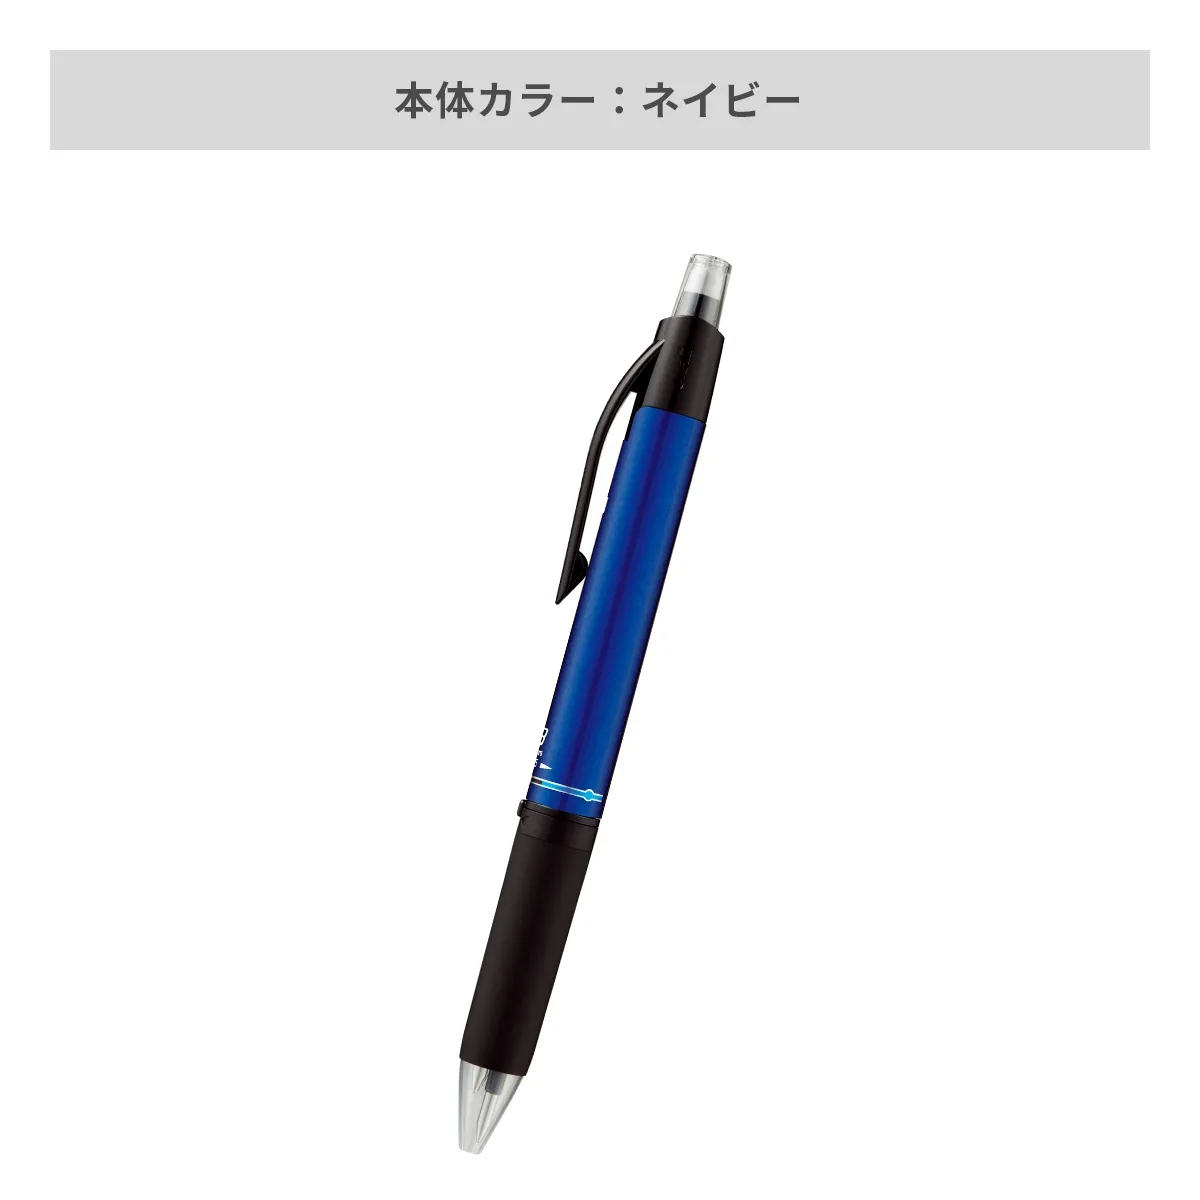 三菱鉛筆 ユニボール アールイー3 0.5mm【名入れボールペン / パッド印刷】 画像5